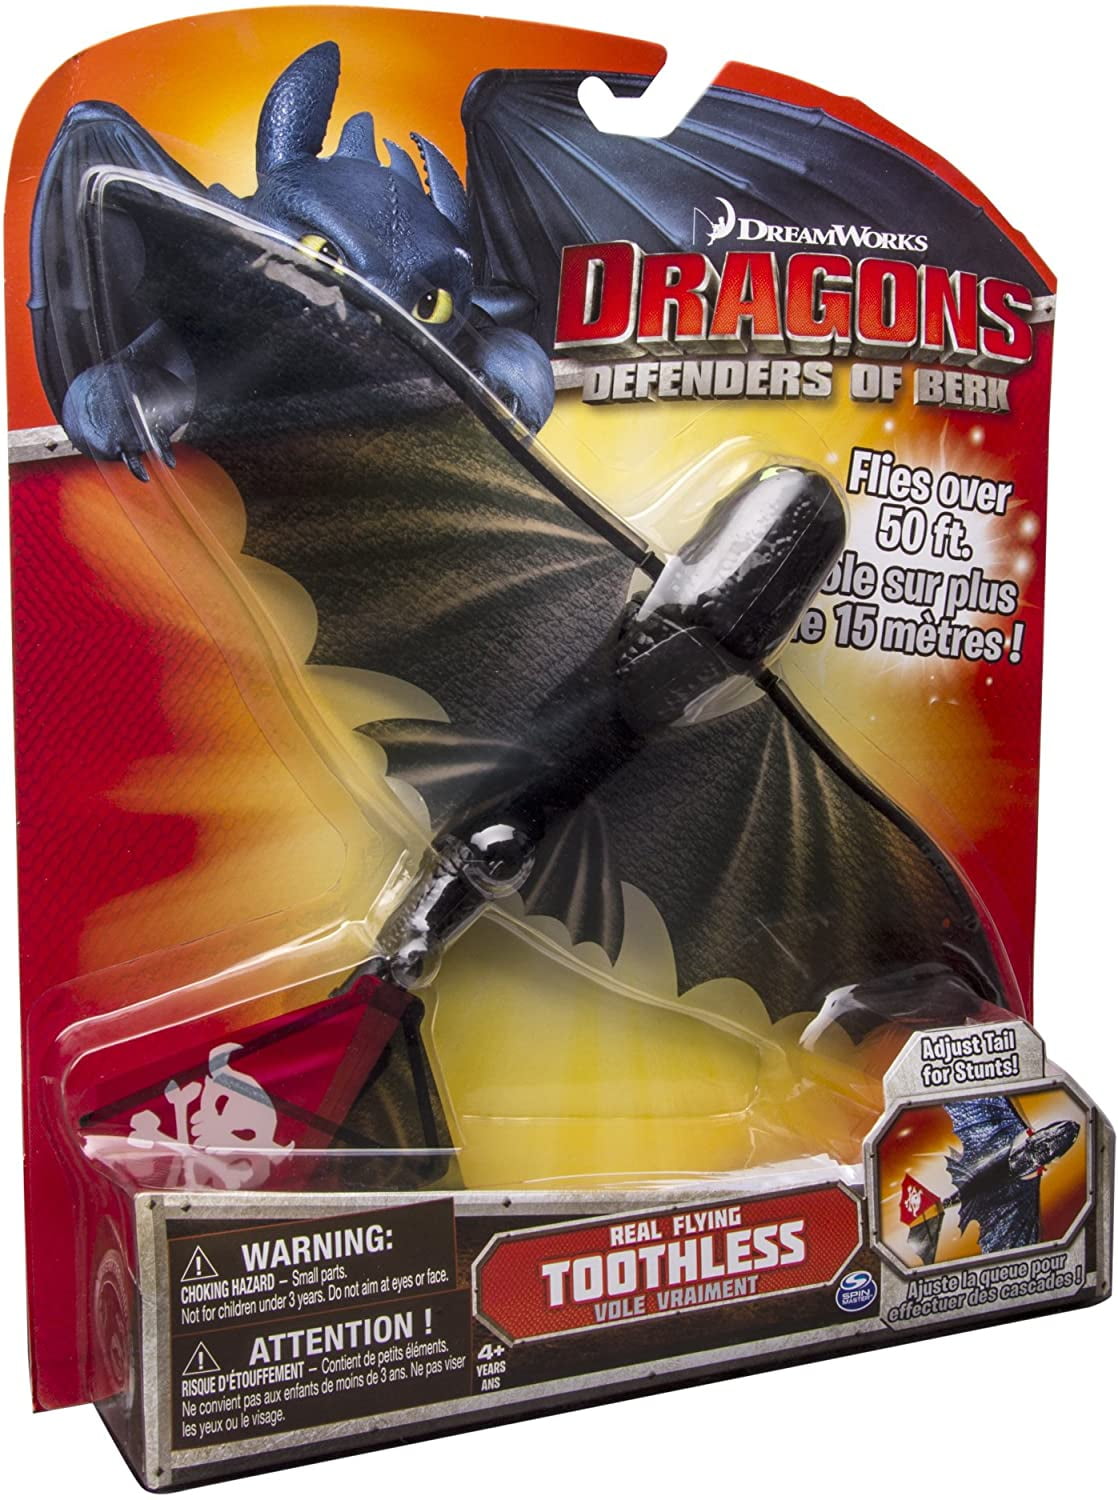 Real Flying Toothless DreamWorks Dragons Defenders of Berk 